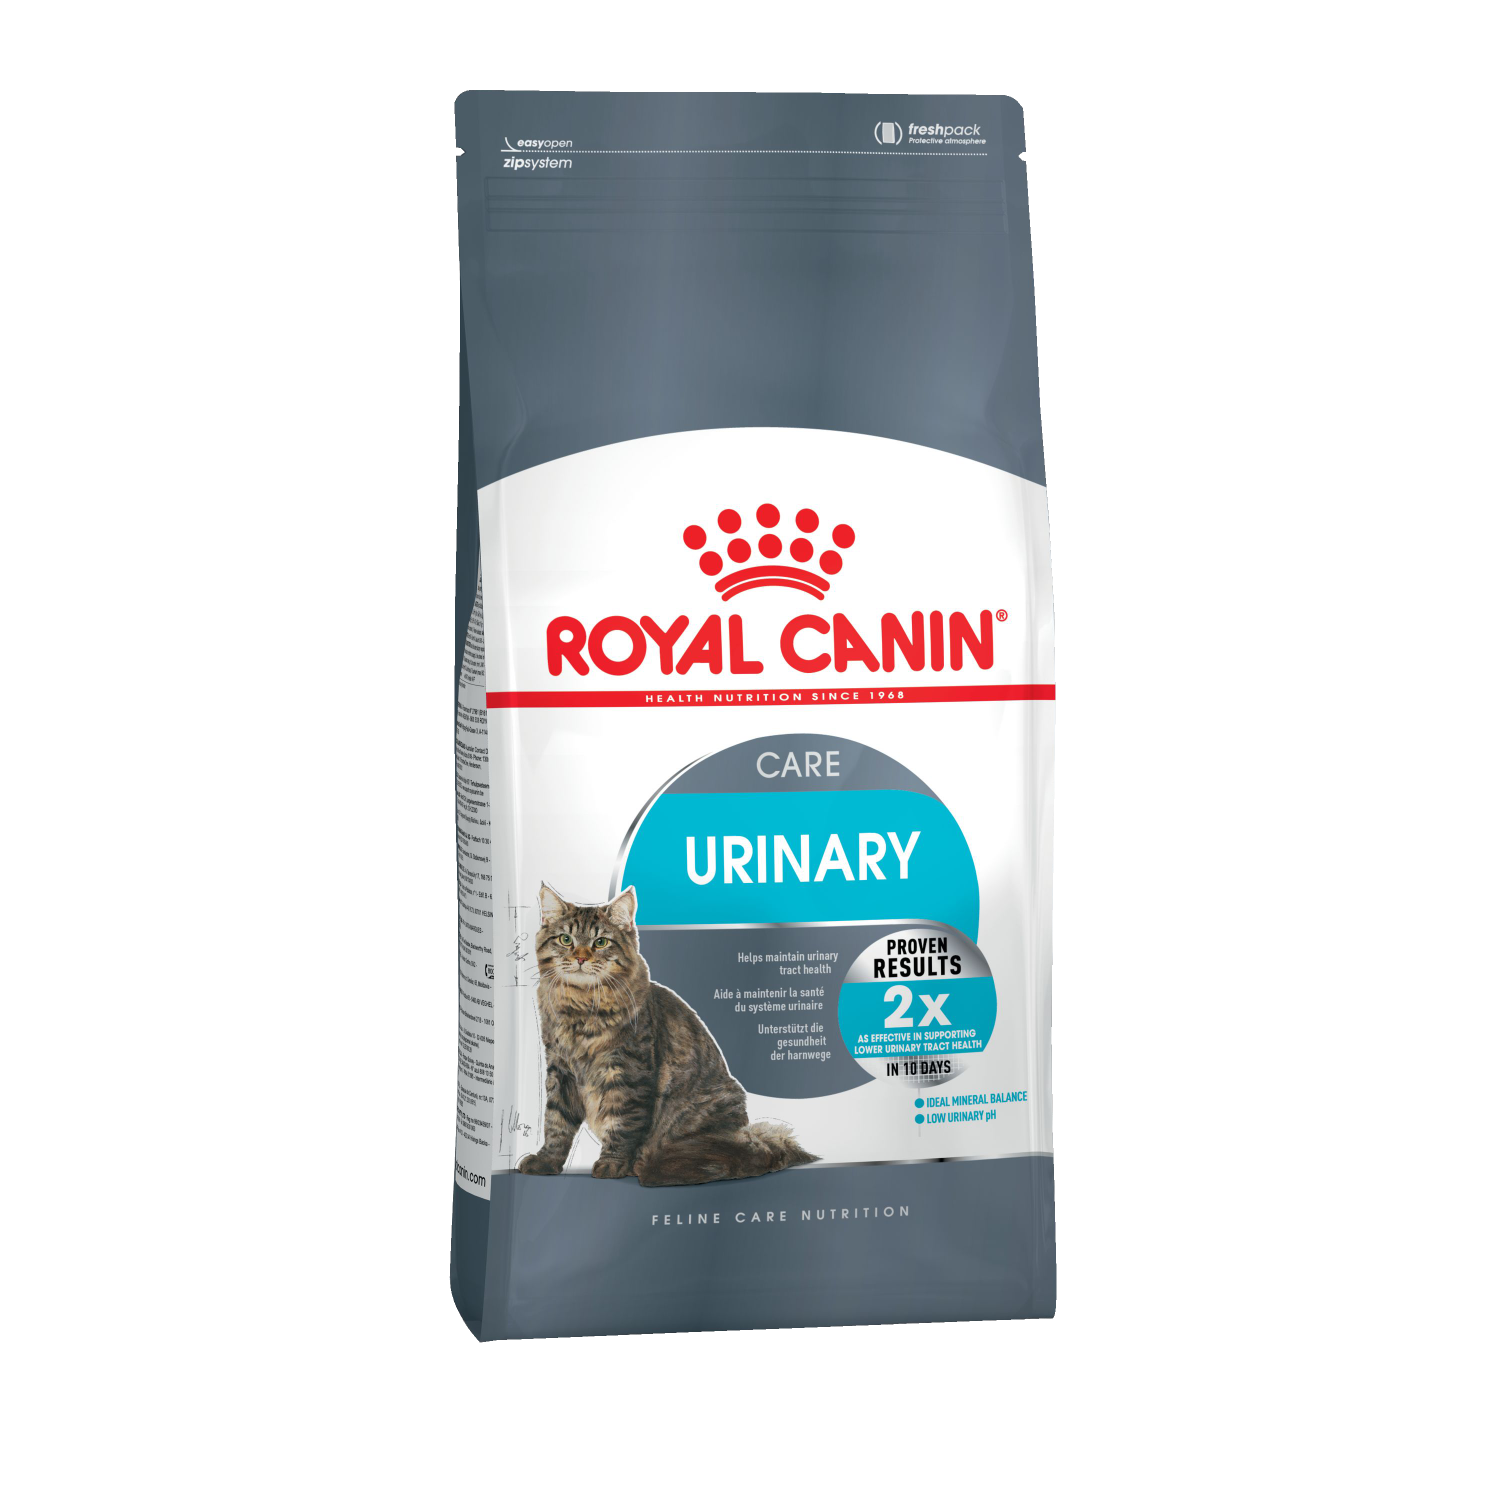 Купить сухой корм для кошек ROYAL CANIN Urinary Care, для профилактики МКБ, 2кг, цены на Мегамаркет | Артикул: 100001285124